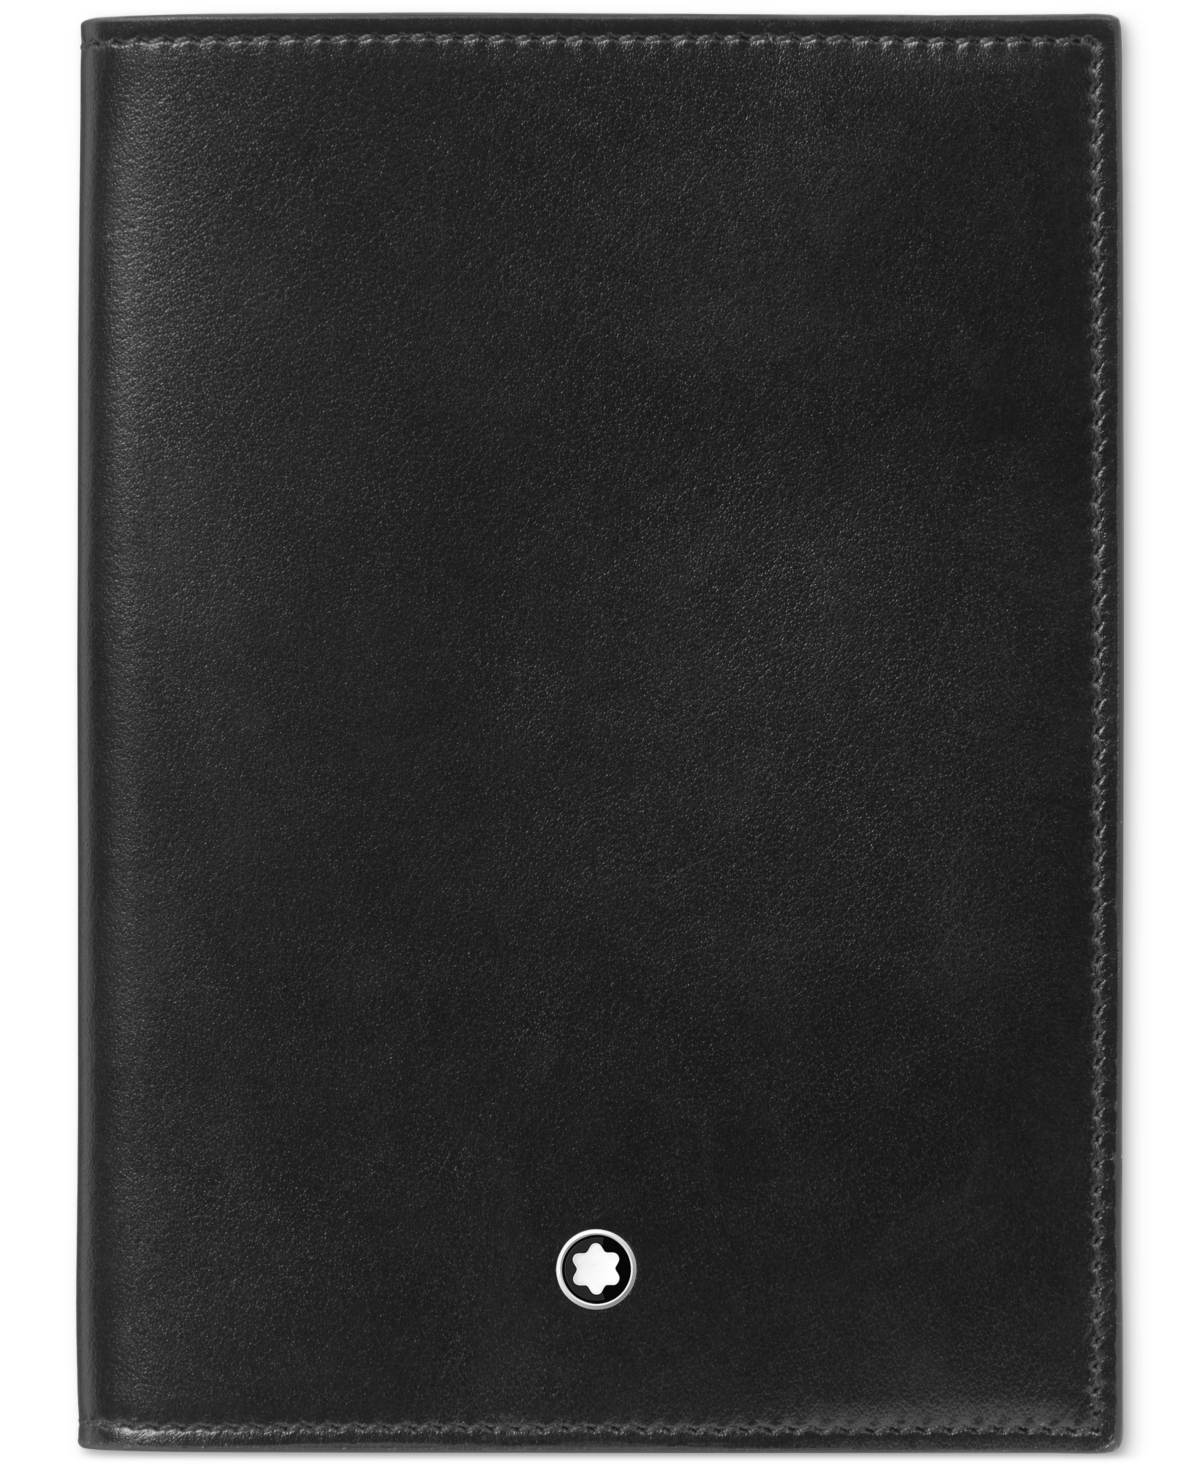 Meisterstuck Leather Passport Holder - Black